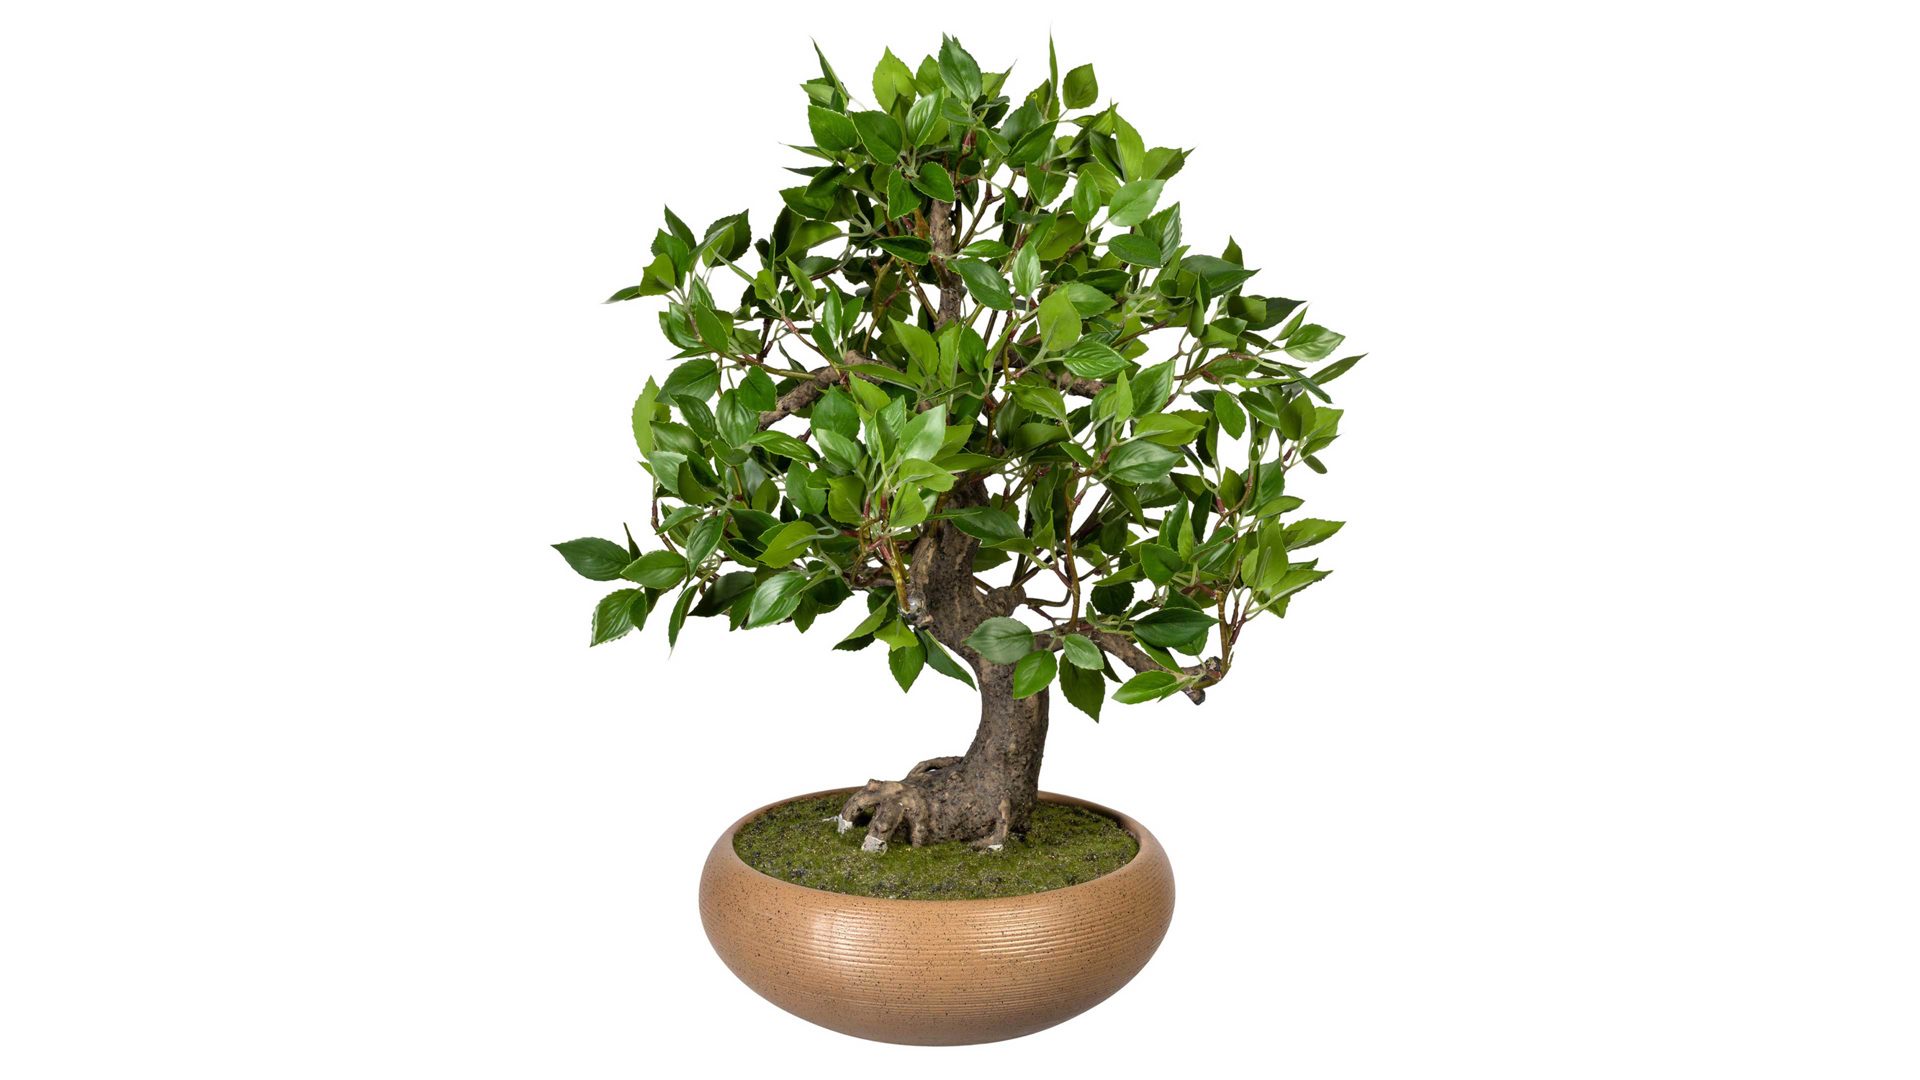 Pflanze Gasper aus Kunststoff in Grün Bonsai Ficus grüner Kunststoff & braune Keramikschale – Höhe ca. 50 cm